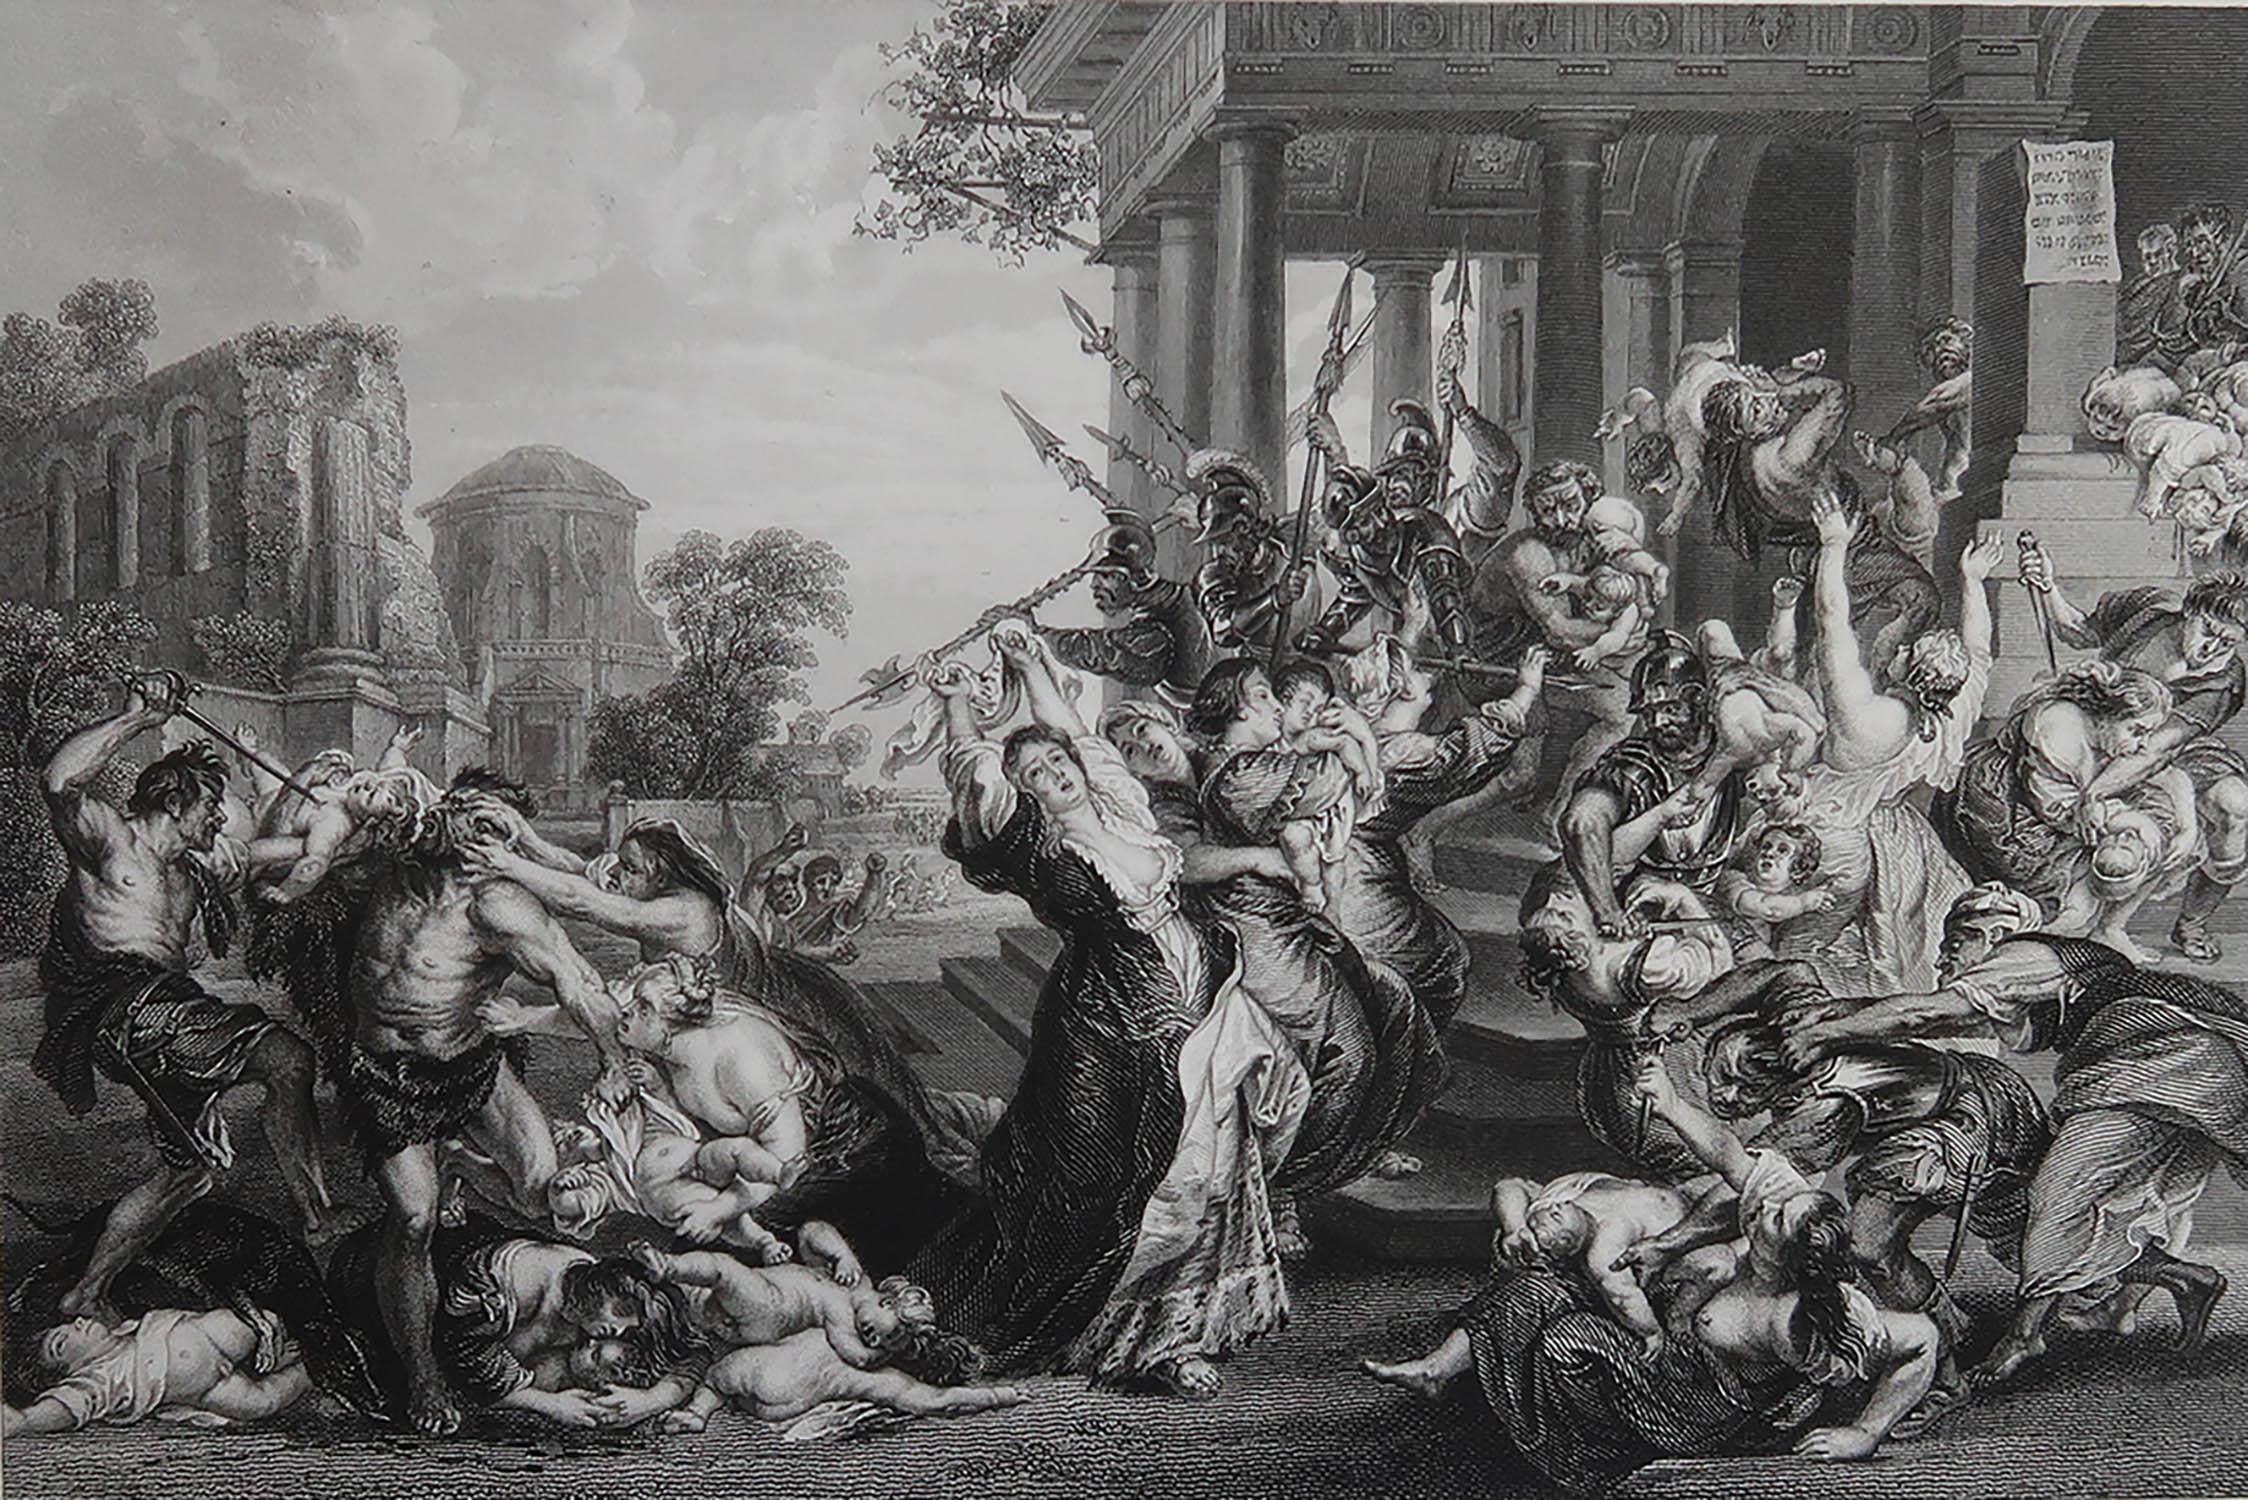 Wunderschönes Bild von Das Massaker an den Unschuldigen

Feiner Stahlstich

Veröffentlicht von Fisher. C.1840

Ungerahmt.

